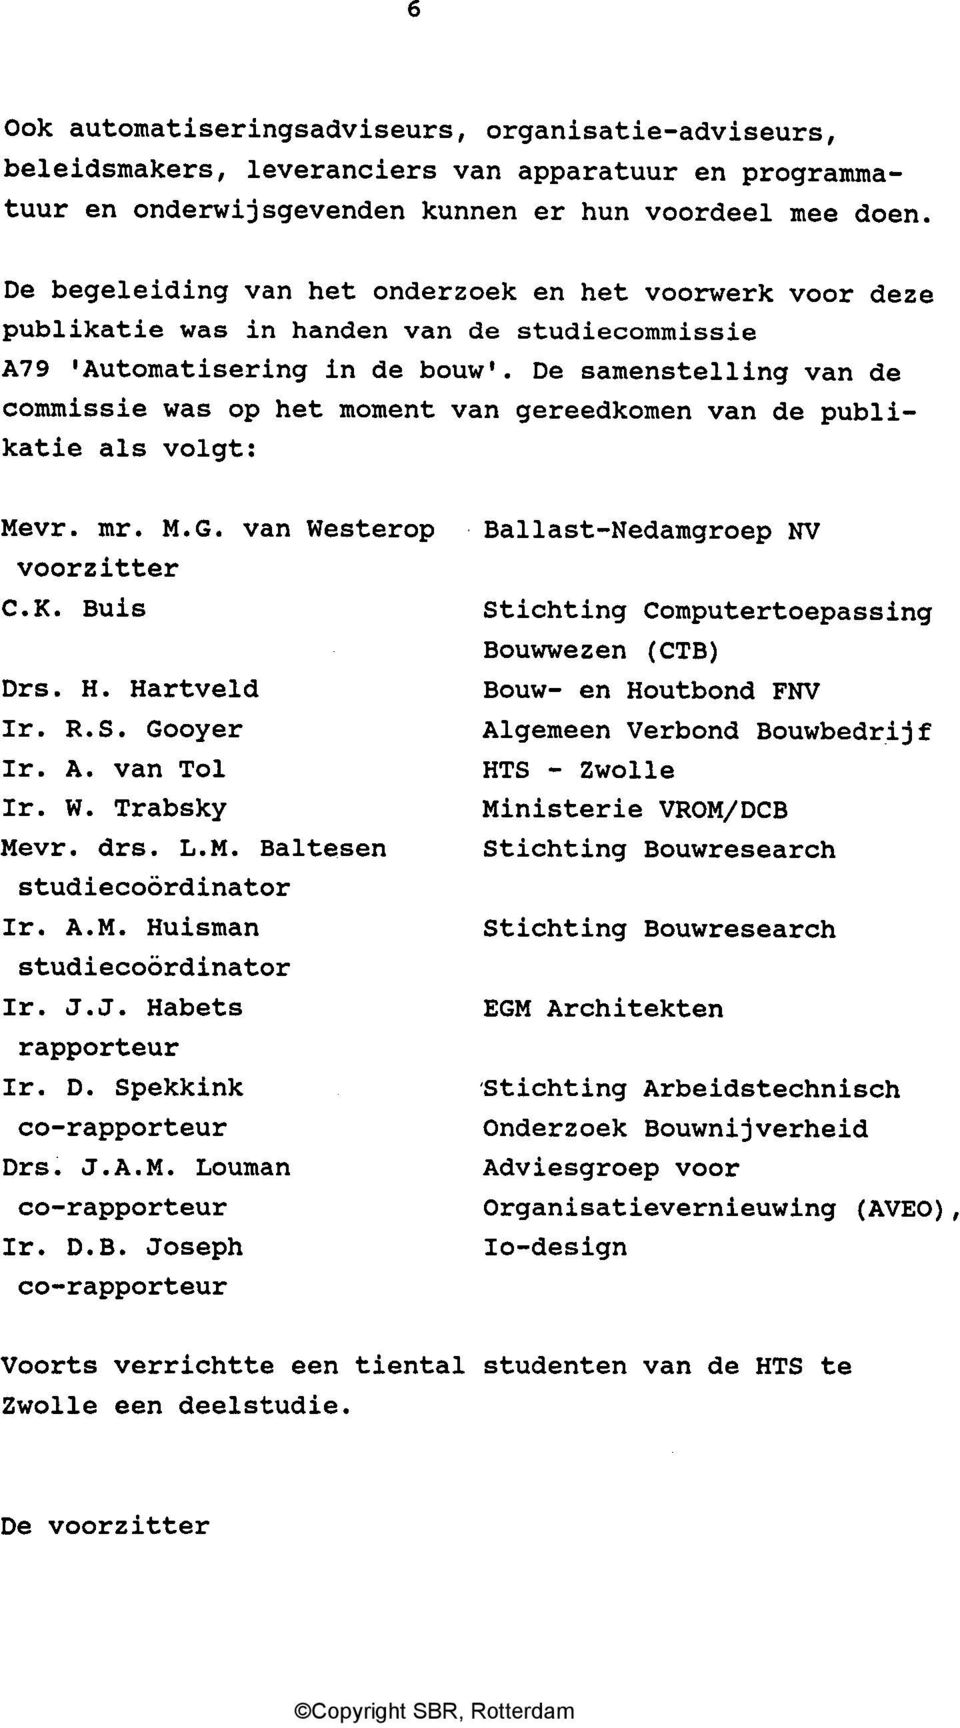 De samenstelling van de commissie was op het moment van gereedkomen van de publikatie als volgt: Mevr. mr. M.G. van Westerop voorzitter C.K. Buis Drs. H. Hartveld Ir. R.S. Gooyer Ir. A. van Tol Ir. W. Trabsky Mevr.